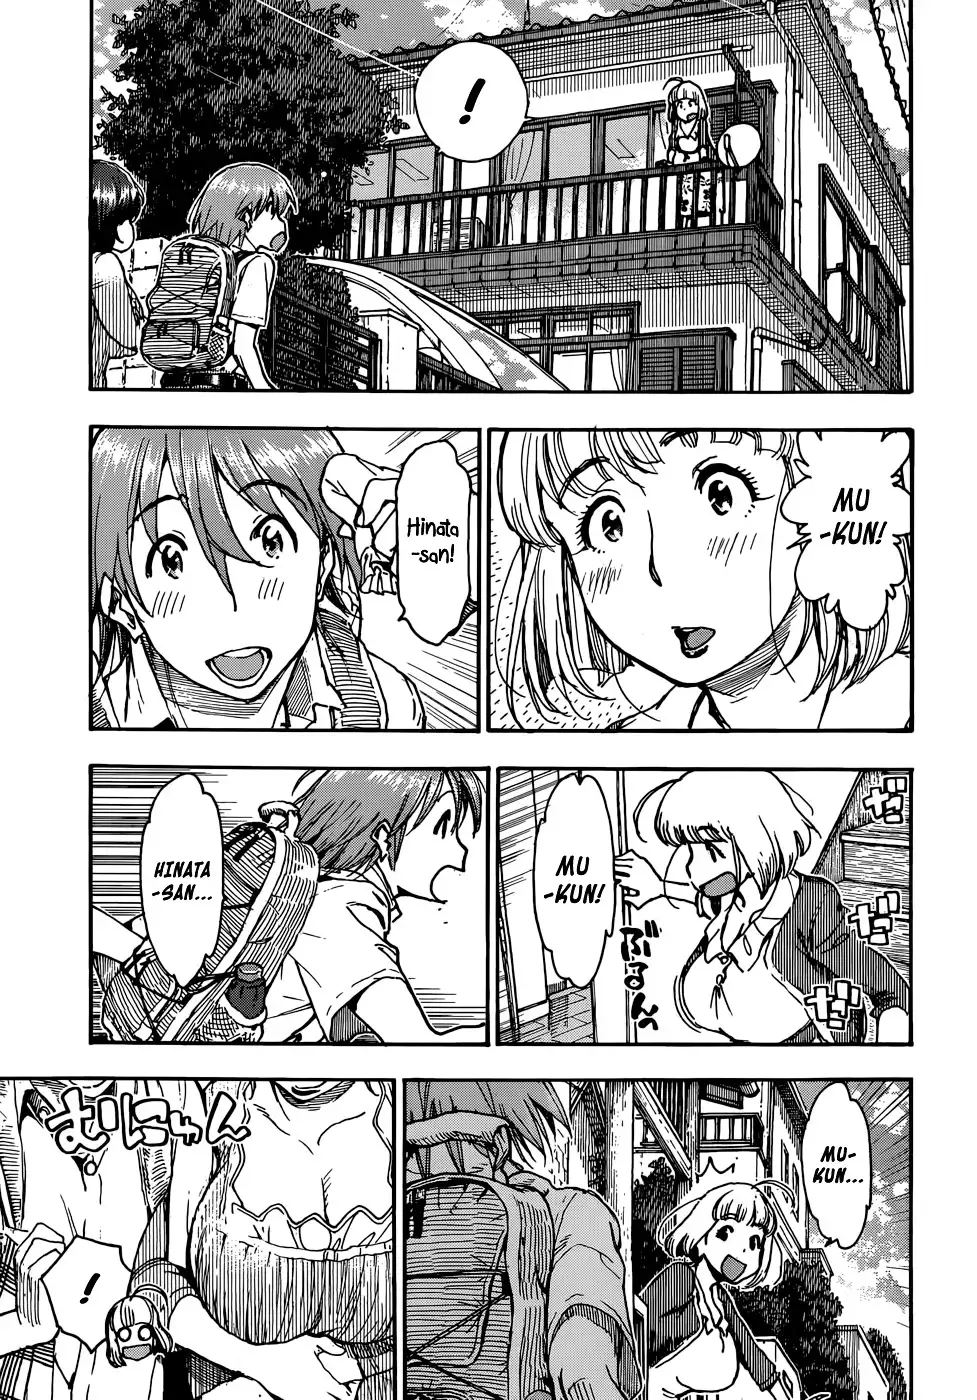 Ashitaba-san Chi no Mukogurashi - Chapter 1 Page 7